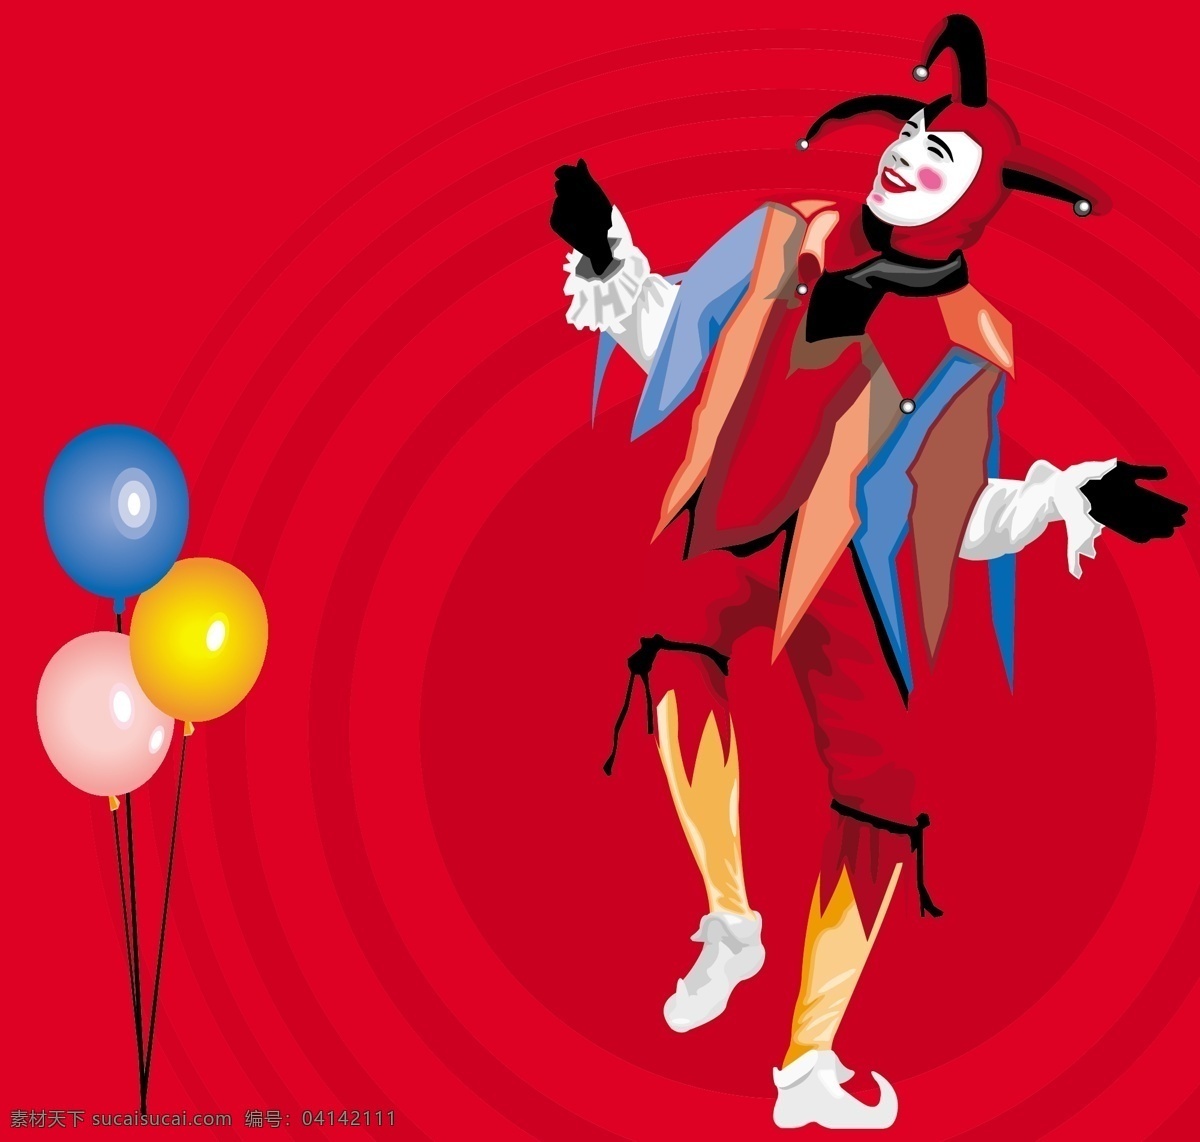 气球 小丑 矢量 气球矢量 气球的小丑 小丑小丑气球 小丑和气球 气球和小丑 小丑矢量 矢量图 其他矢量图